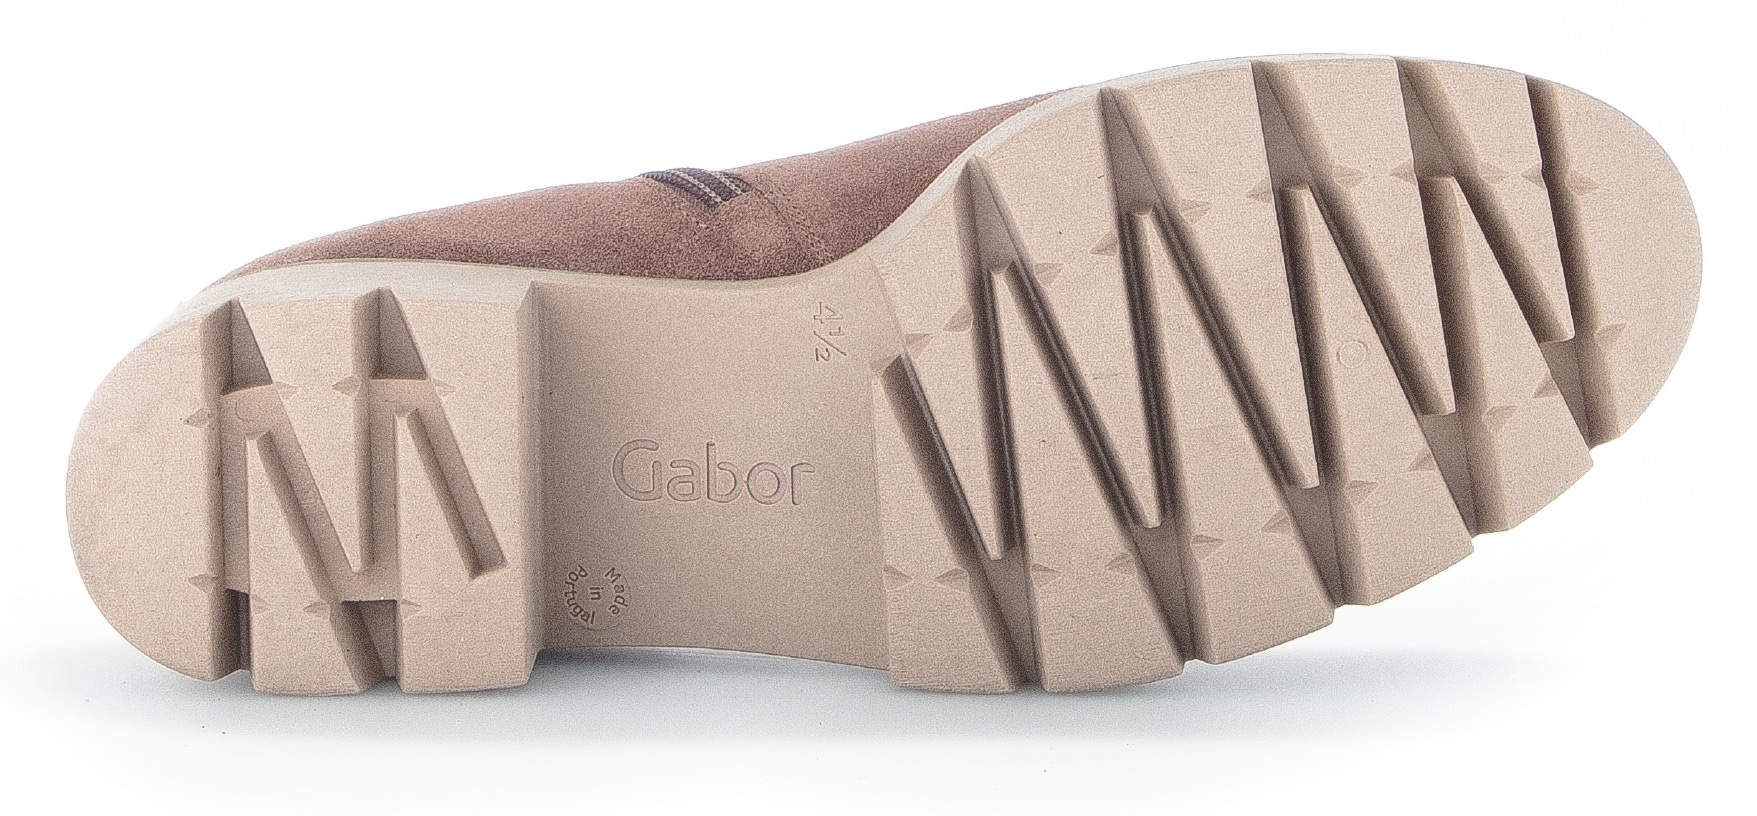 Gabor Chelseaboots, Blockabsatz, Stiefelette mit Best Fitting Ausstattung